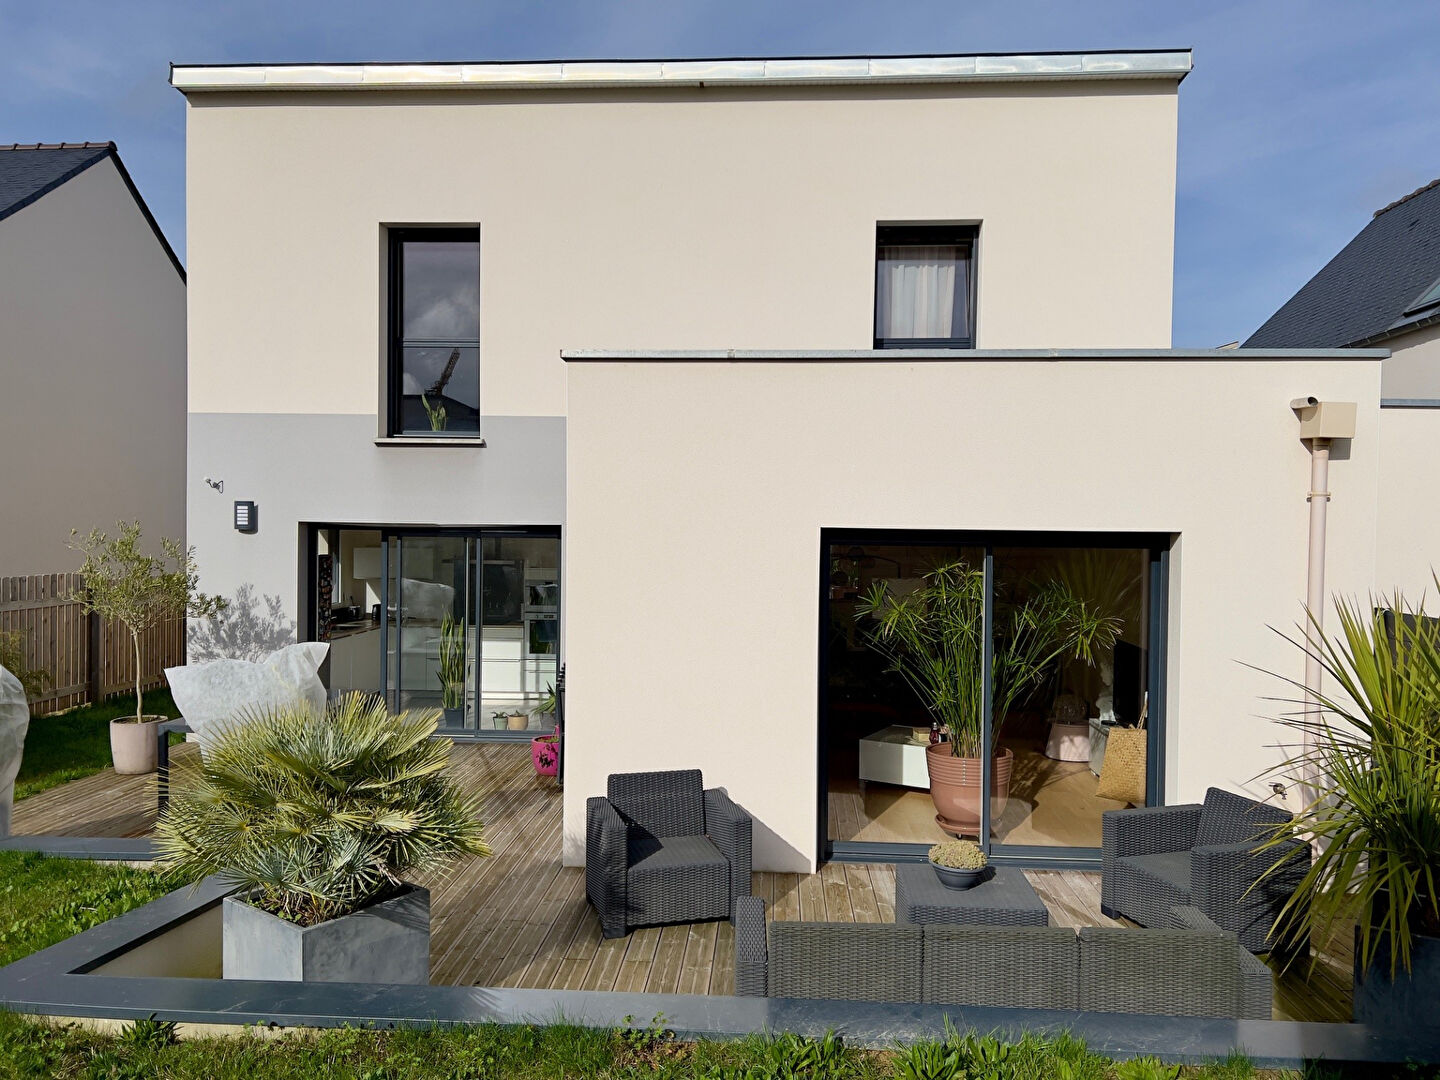 Maison 5 pièces - 141 m² environ - 55177501h.jpg | Kermarrec Habitation